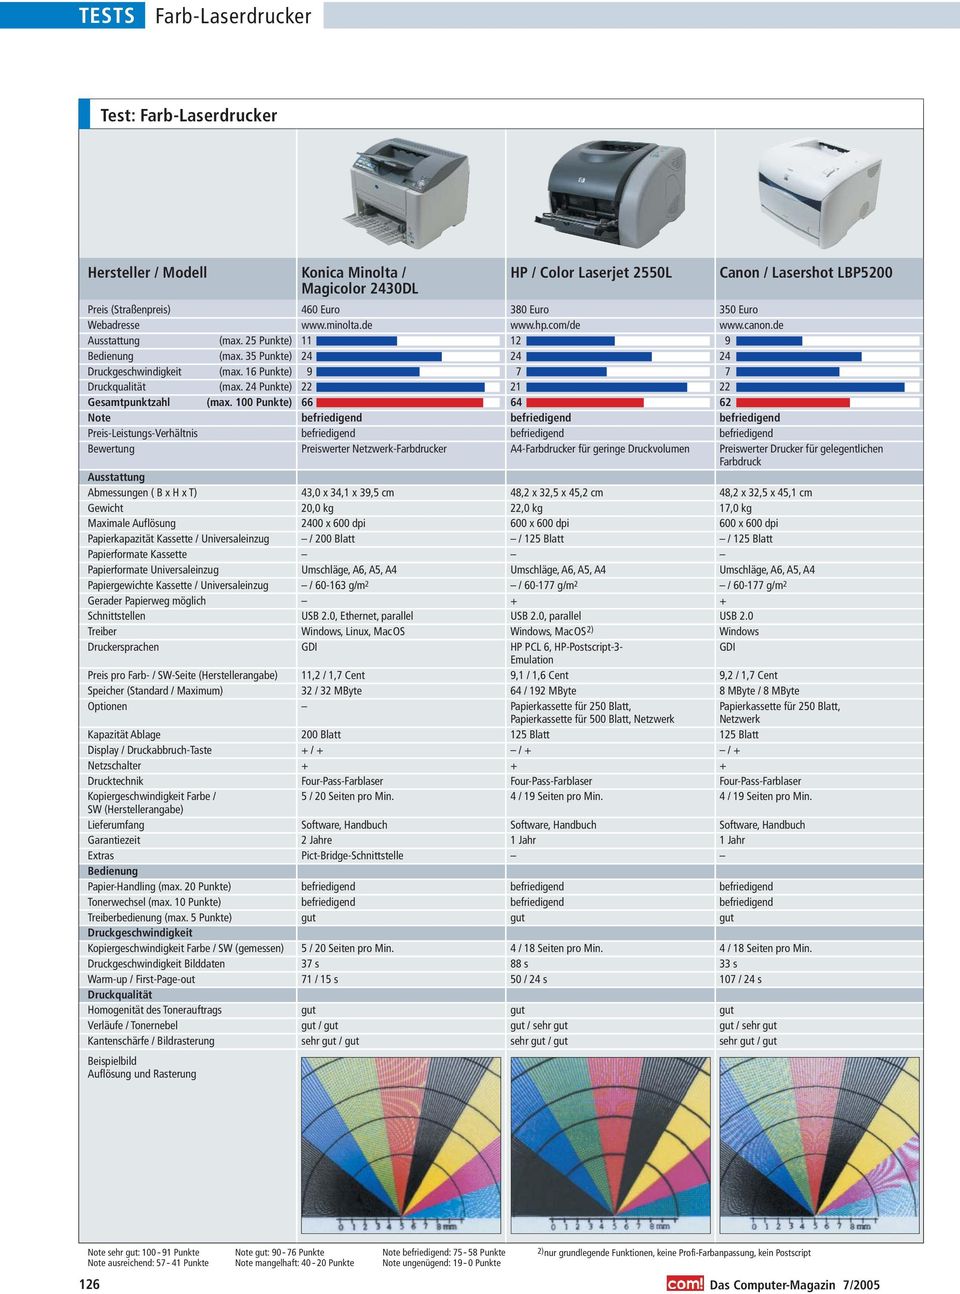 Universaleinzug Gerader Papierweg möglich Schnittstellen Treiber Druckersprachen Preis pro Farb- / SW-Seite (Herstellerangabe) Speicher (Standard / Maximum) Optionen Kapazität Ablage Display /